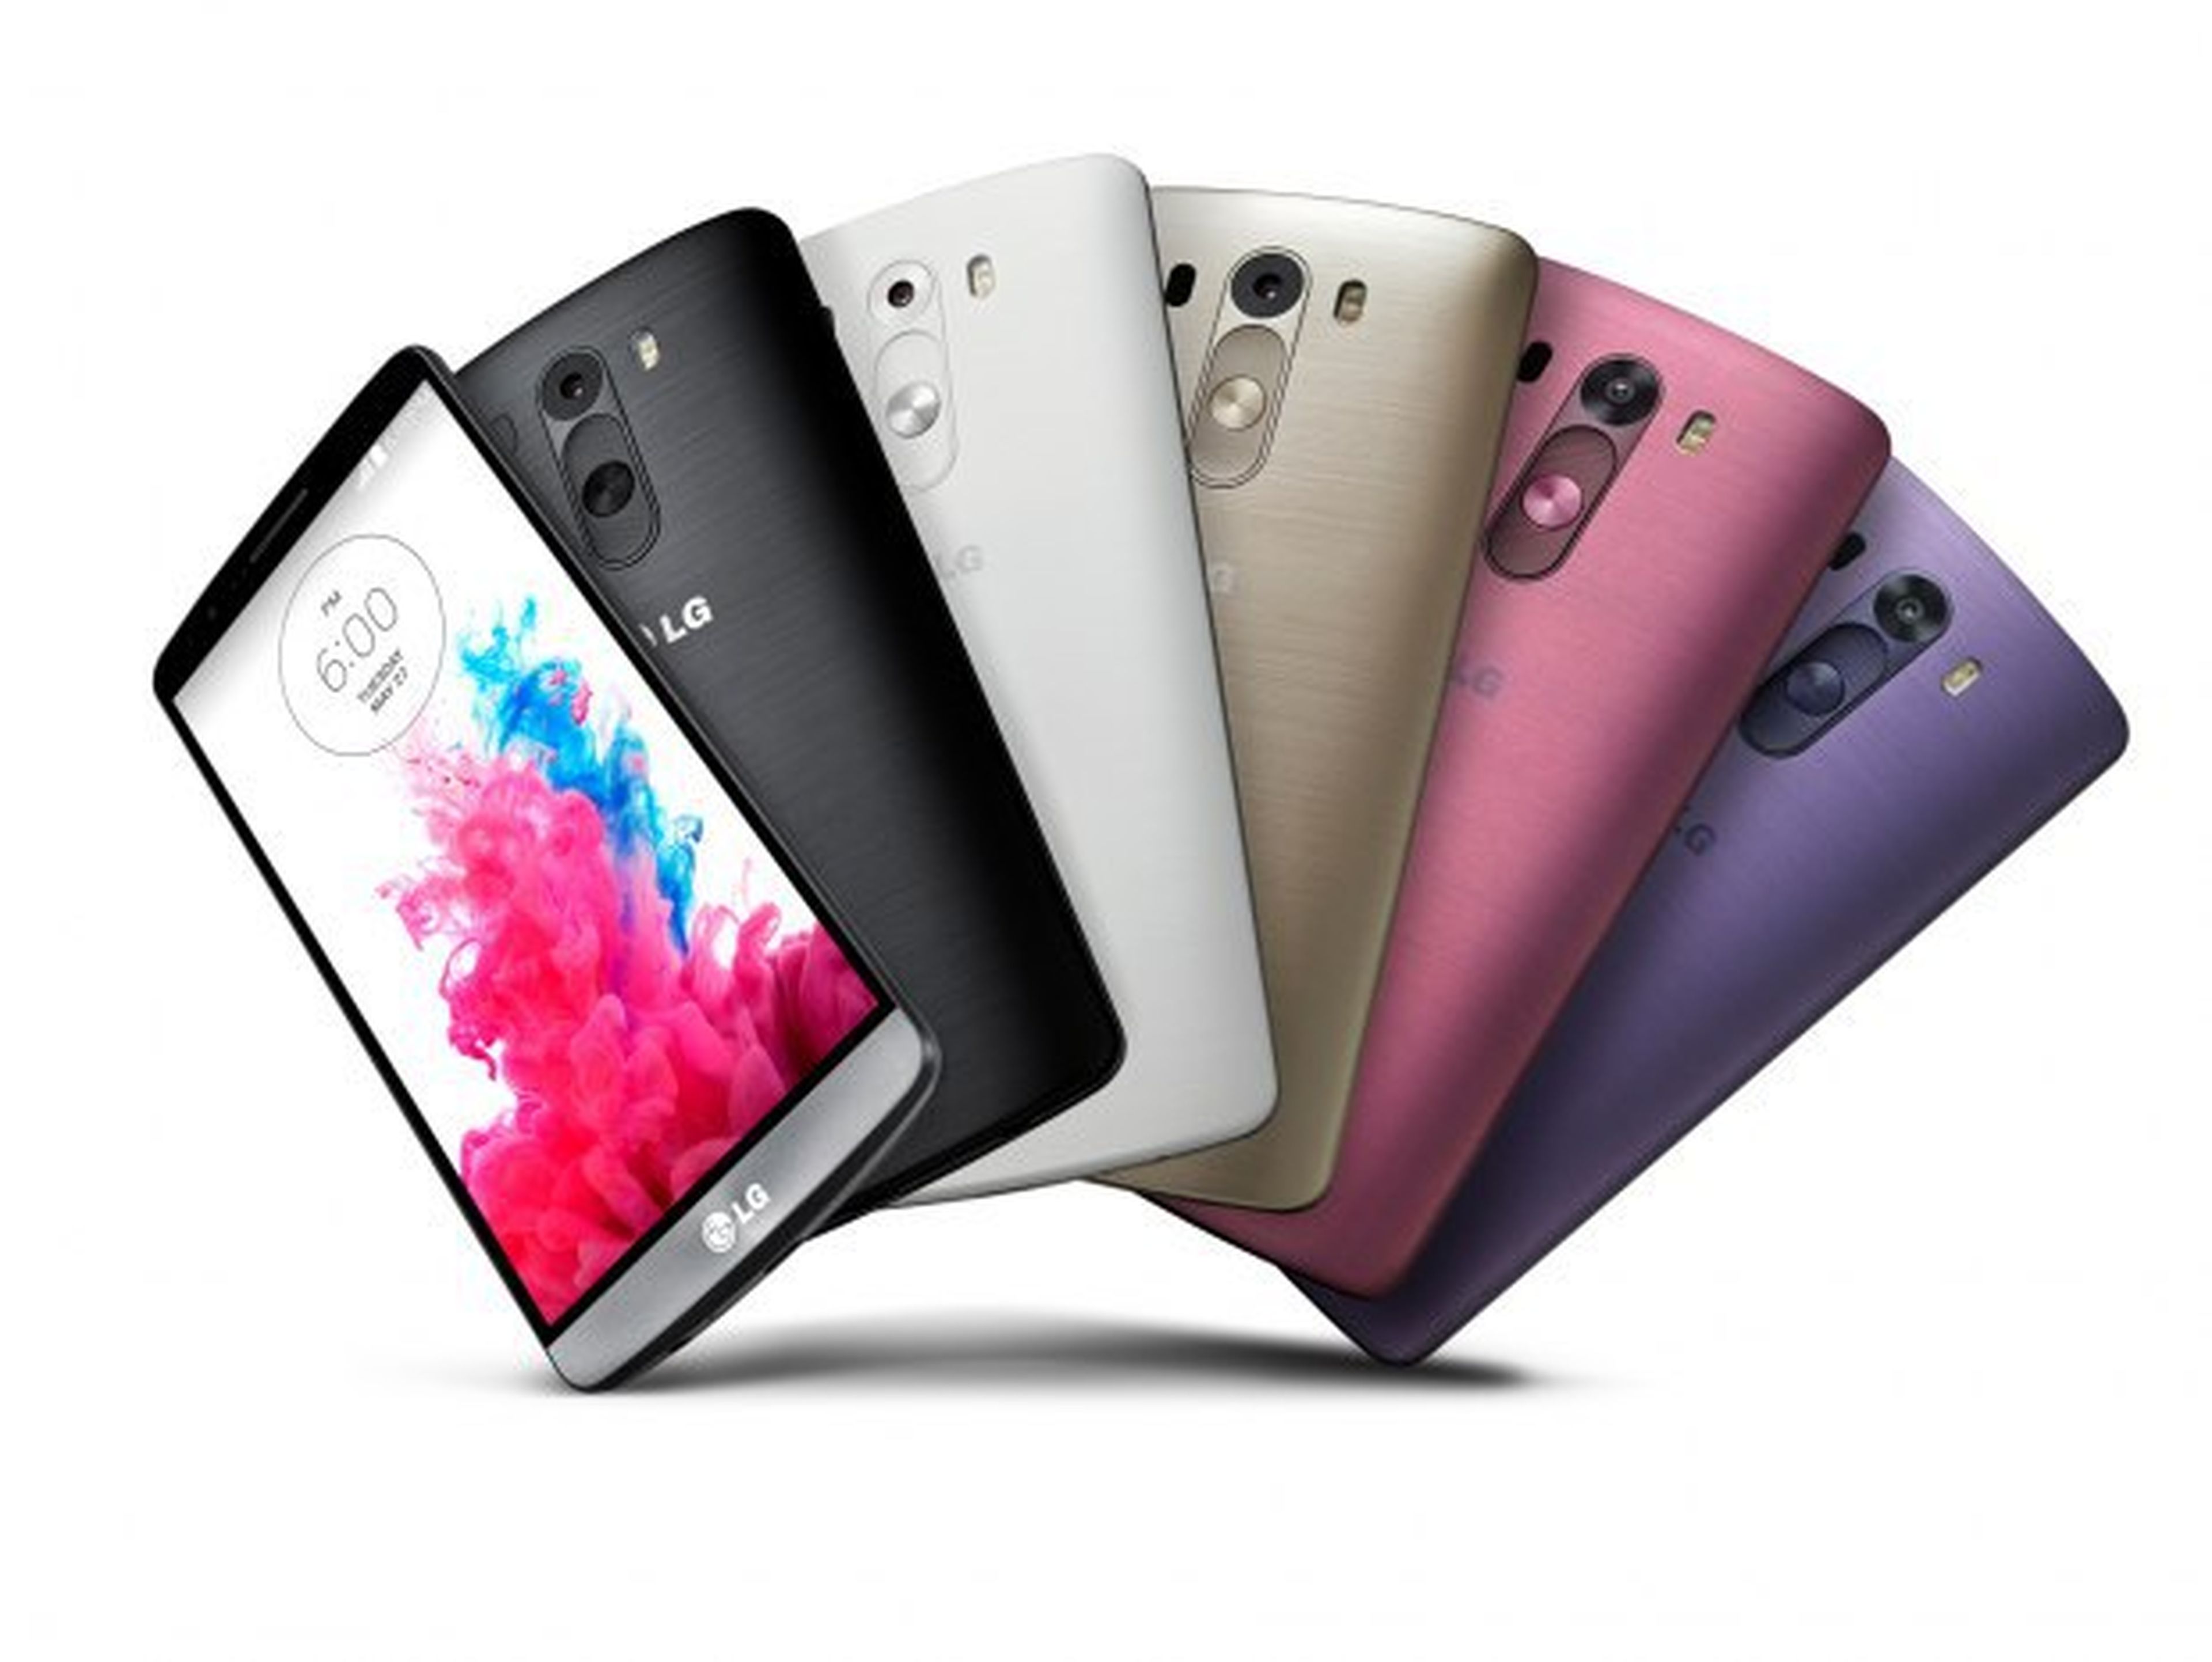 ¿Qué distingue al nuevo LG G3 del resto de smartphones?